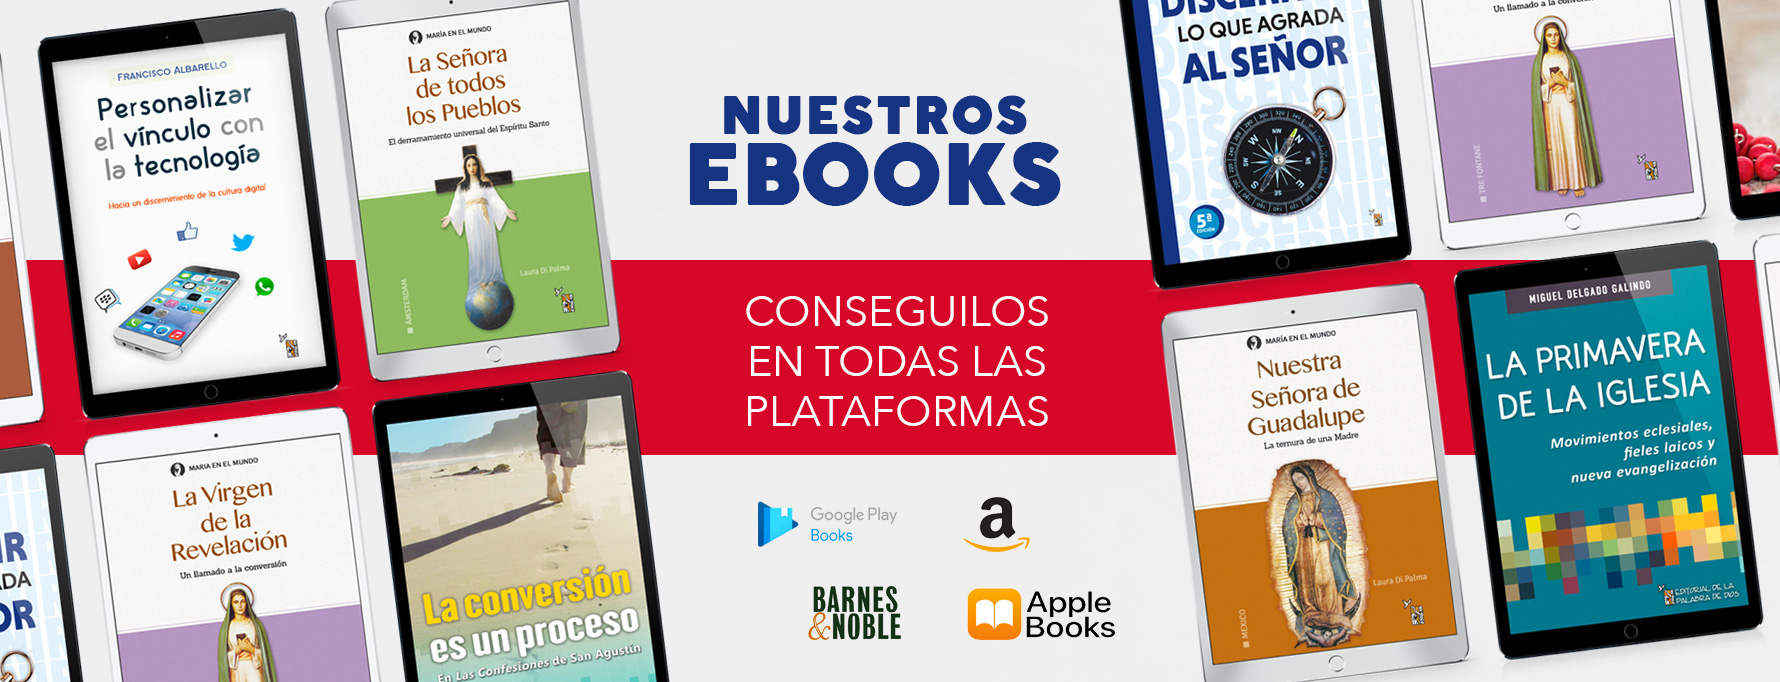 sliders-ebooks-plataforma